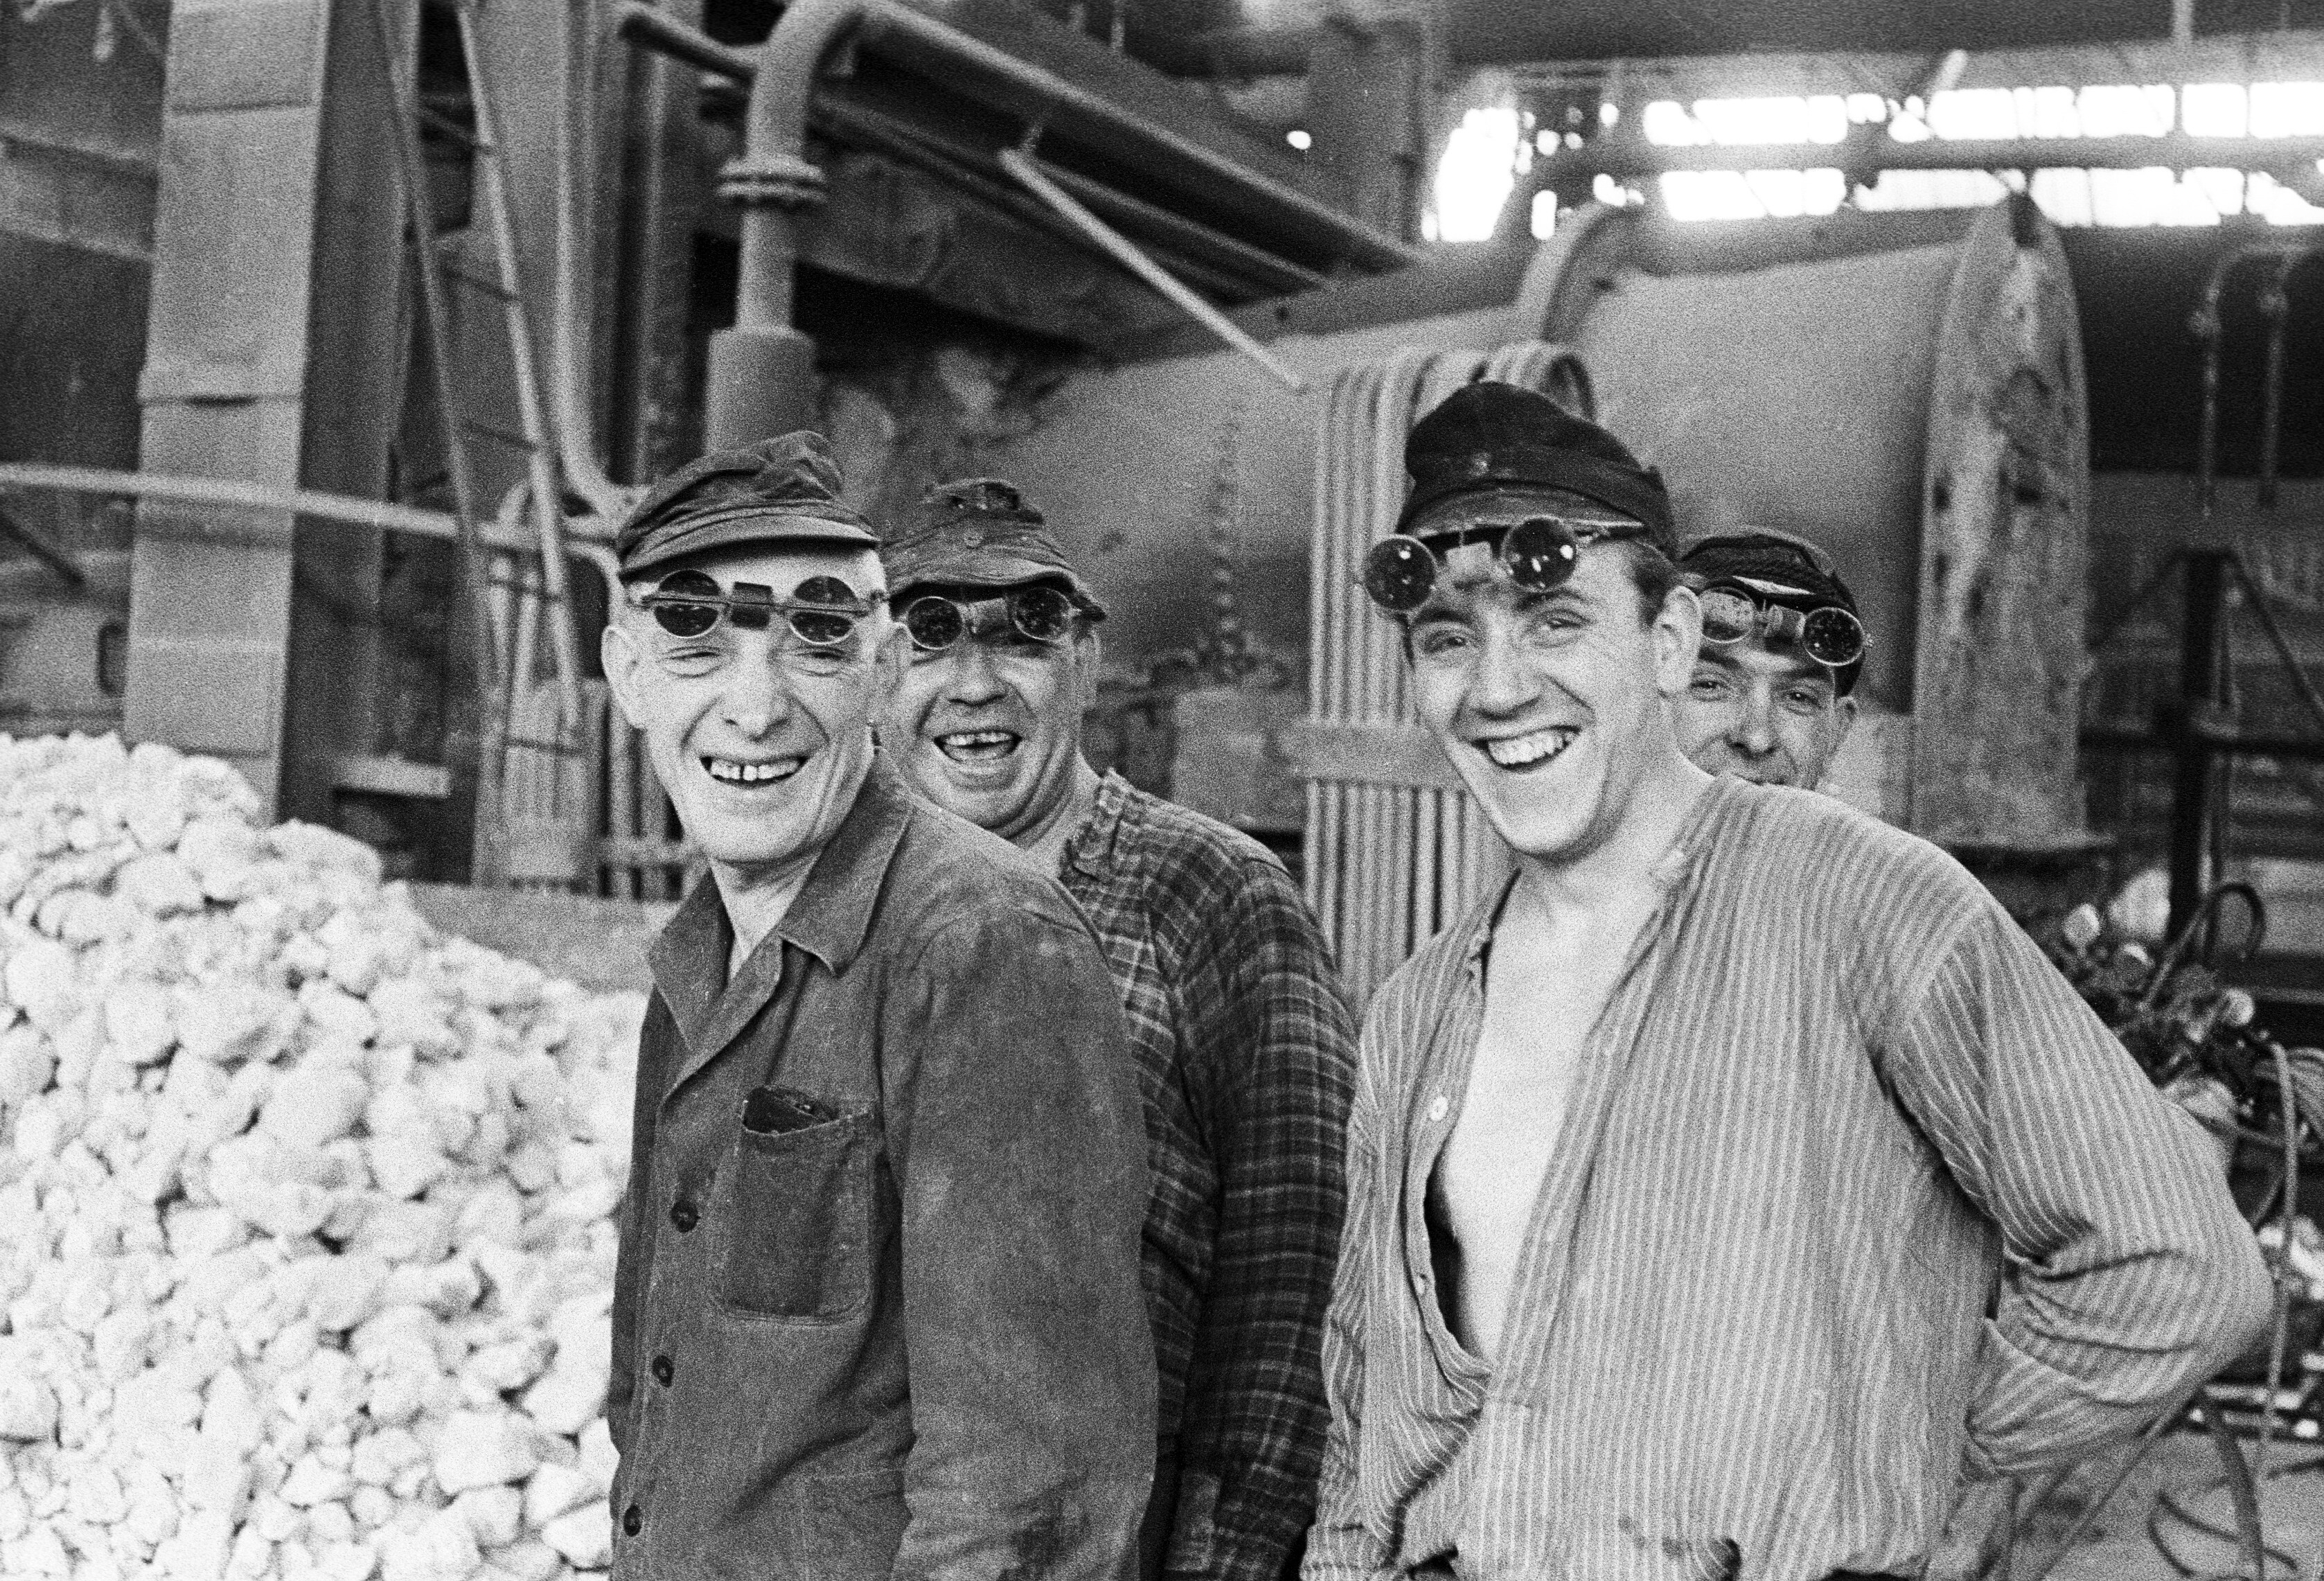 Questa foto, scattata alla Niederrheinishe Hütte in Düsseldorf, mostra un gruppo di lavoratori in un centro di produzione dell’acciaio. 1956. Düsseldorf, Germania Autore sconosciuto. Foto n. 405253 © courtesy UN Photo/AS